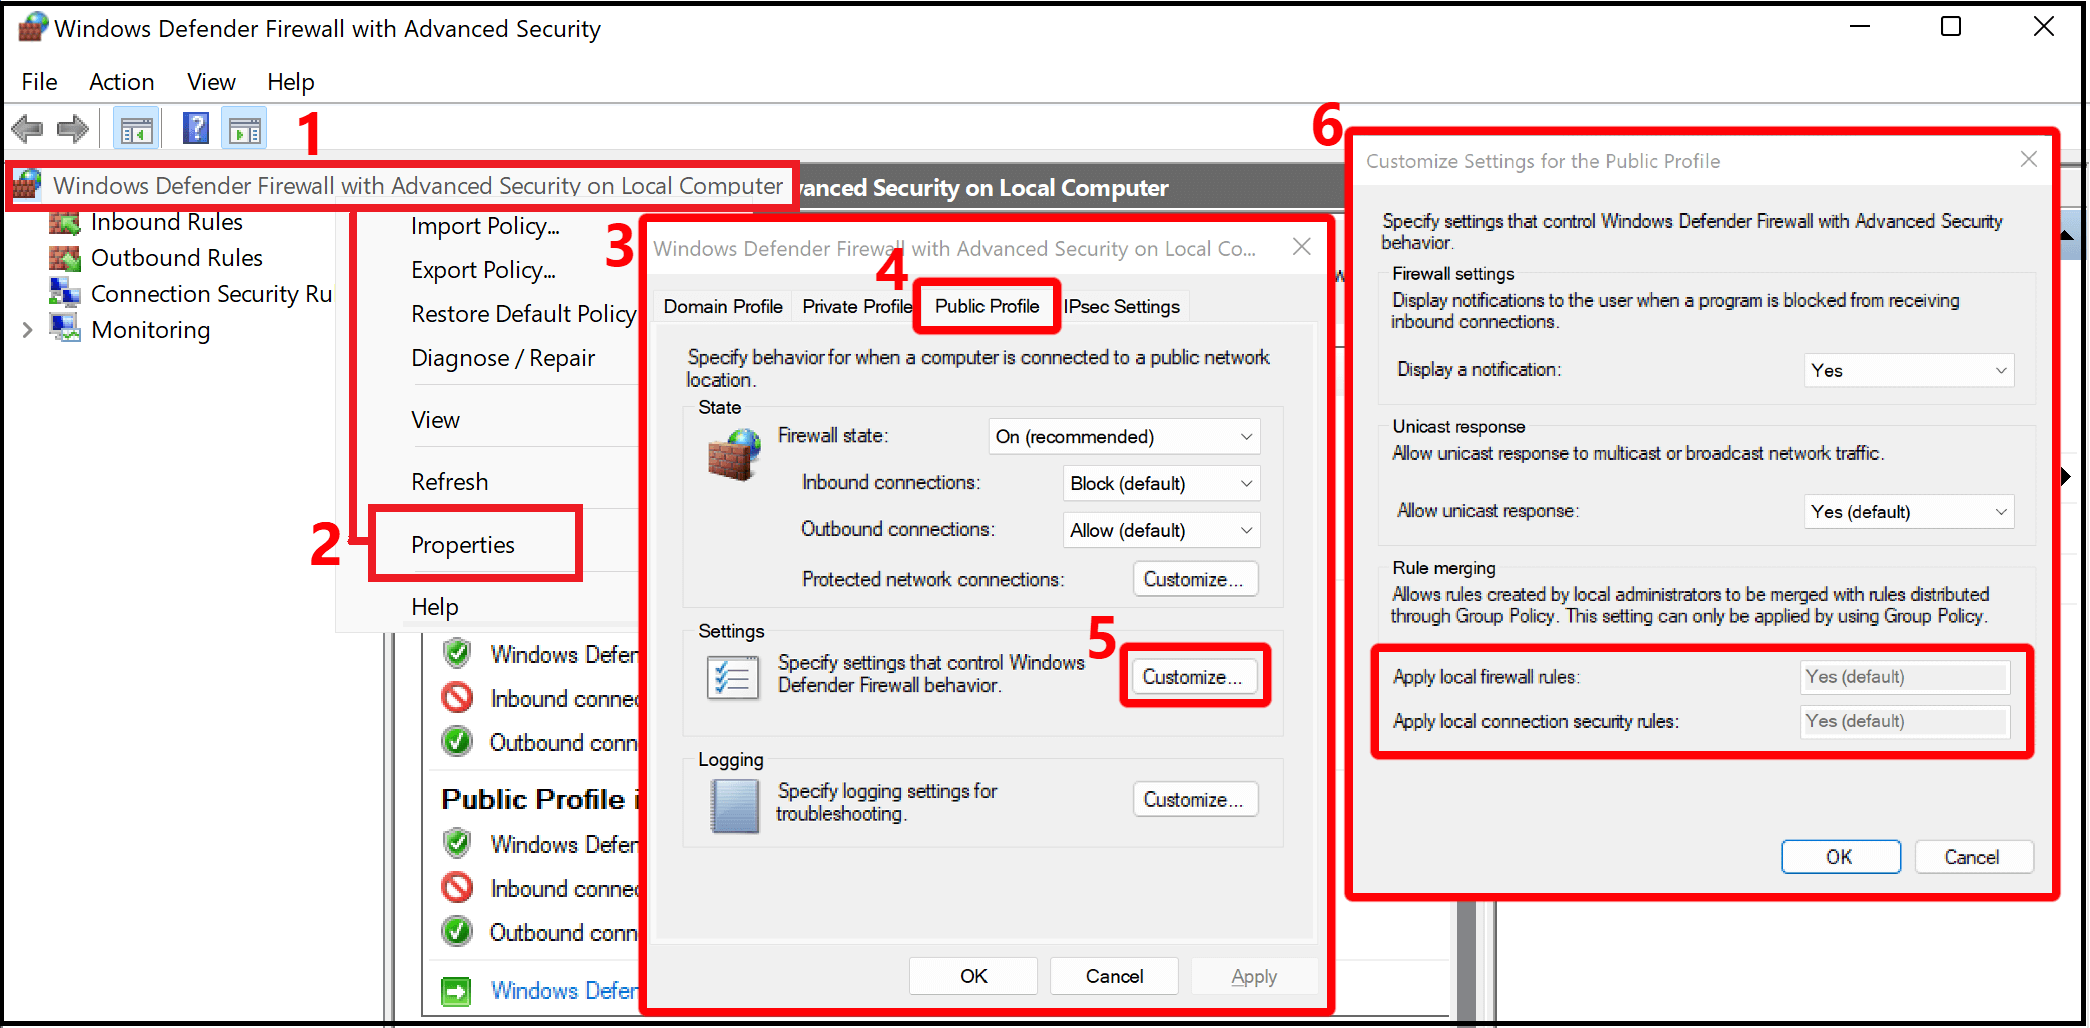 Öffnen Sie den Finder auf Ihrem Mac oder den Explorer auf Ihrem Windows-Computer.
Navigieren Sie zu C:WindowsSystem32driversetc.